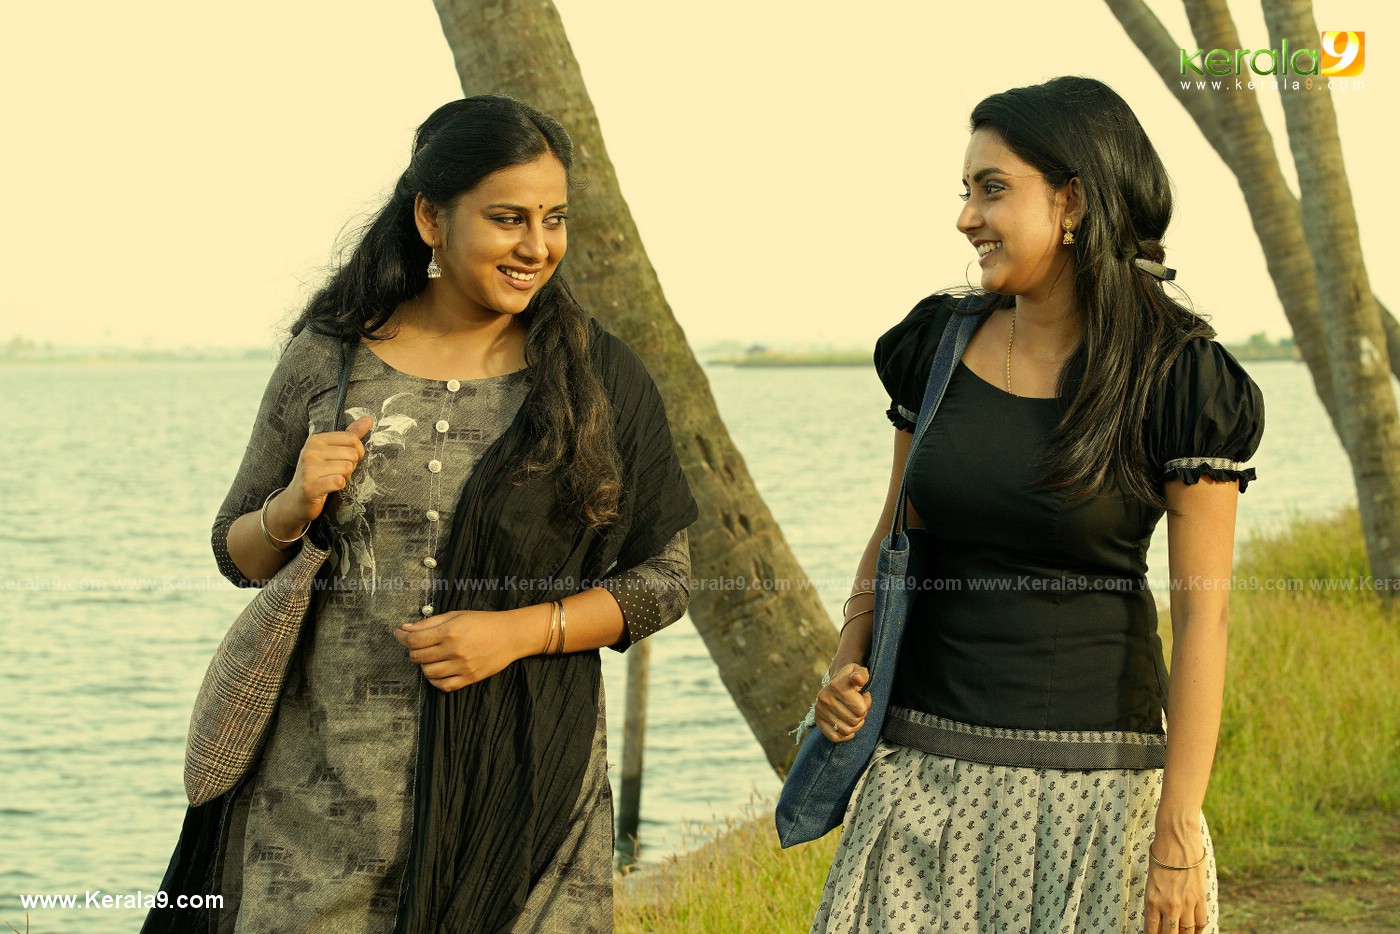 anna reshma rajan in madura raja movie stills 12 - Kerala9.com